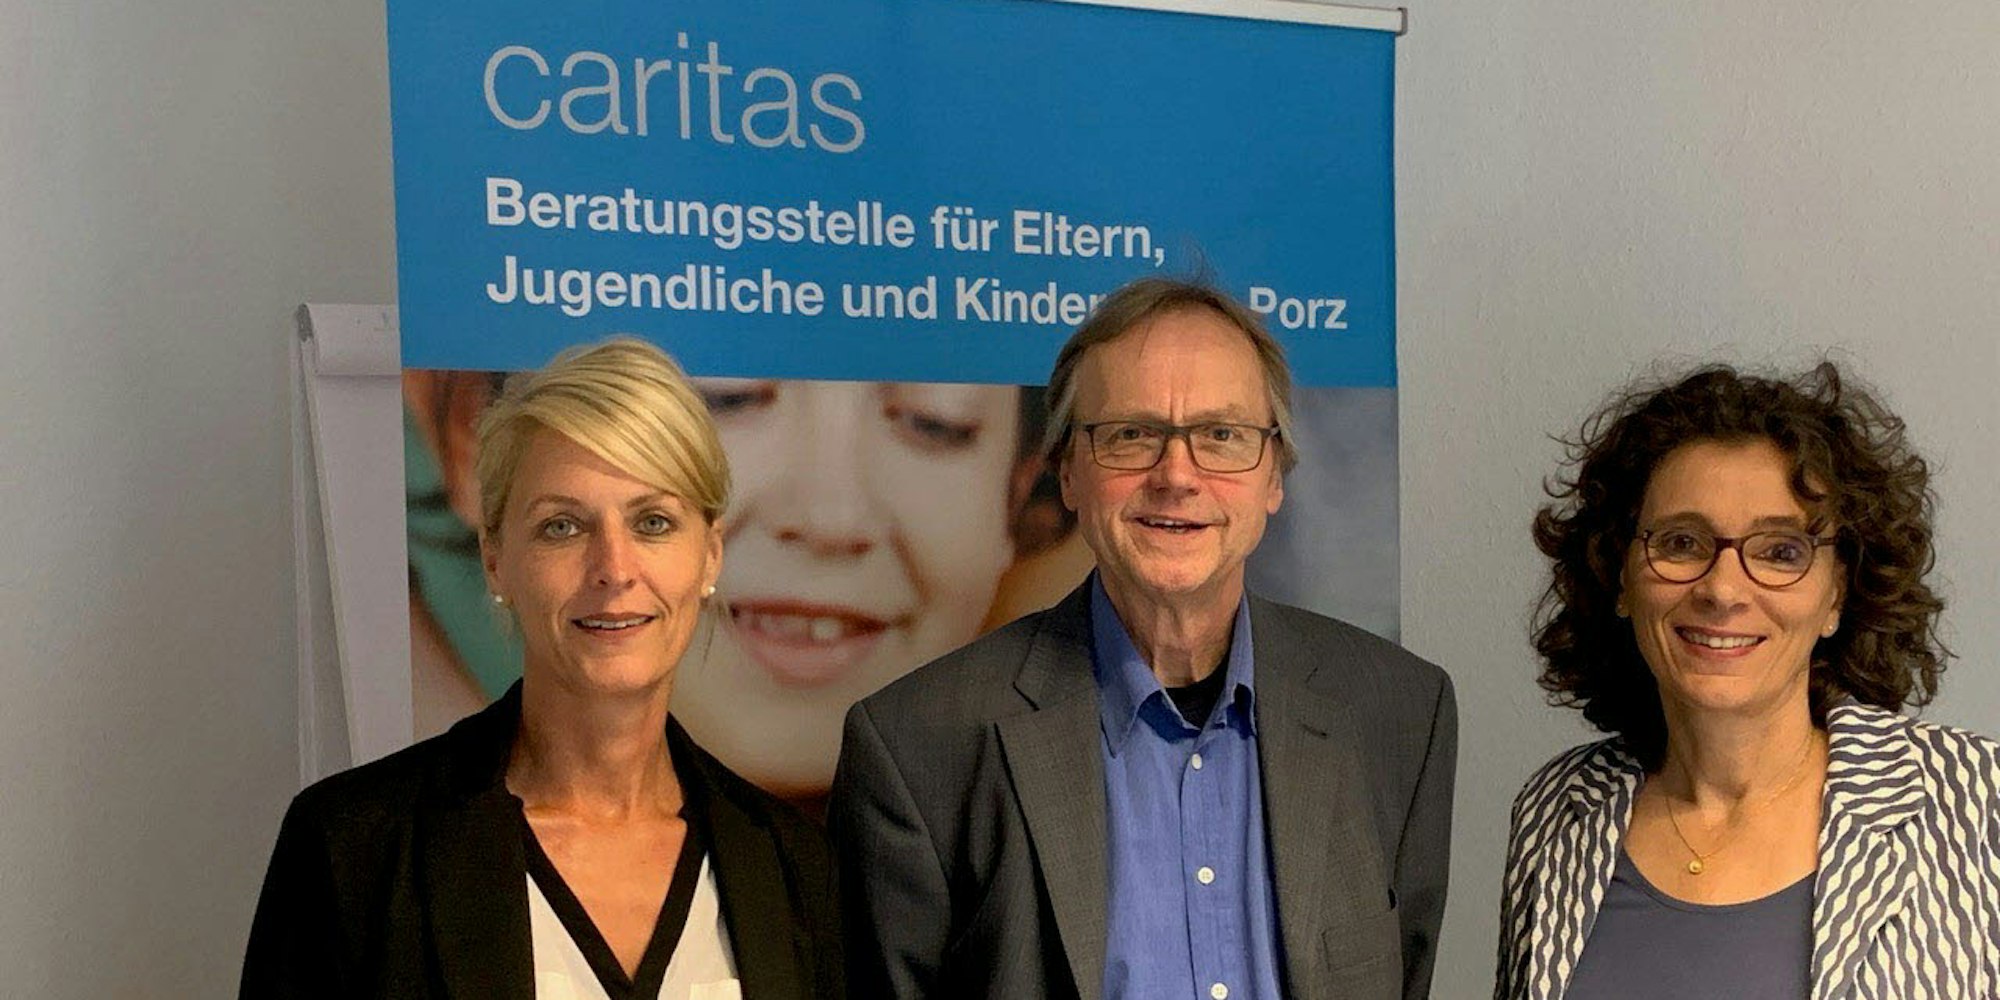 Anja Antoine (l.) übernimmt die Leitung der Caritas-Familienberatung, Thomas Lindner geht in den Ruhestand. Andrea Domke leitet mehrere Einrichtungen im Caritasverband.